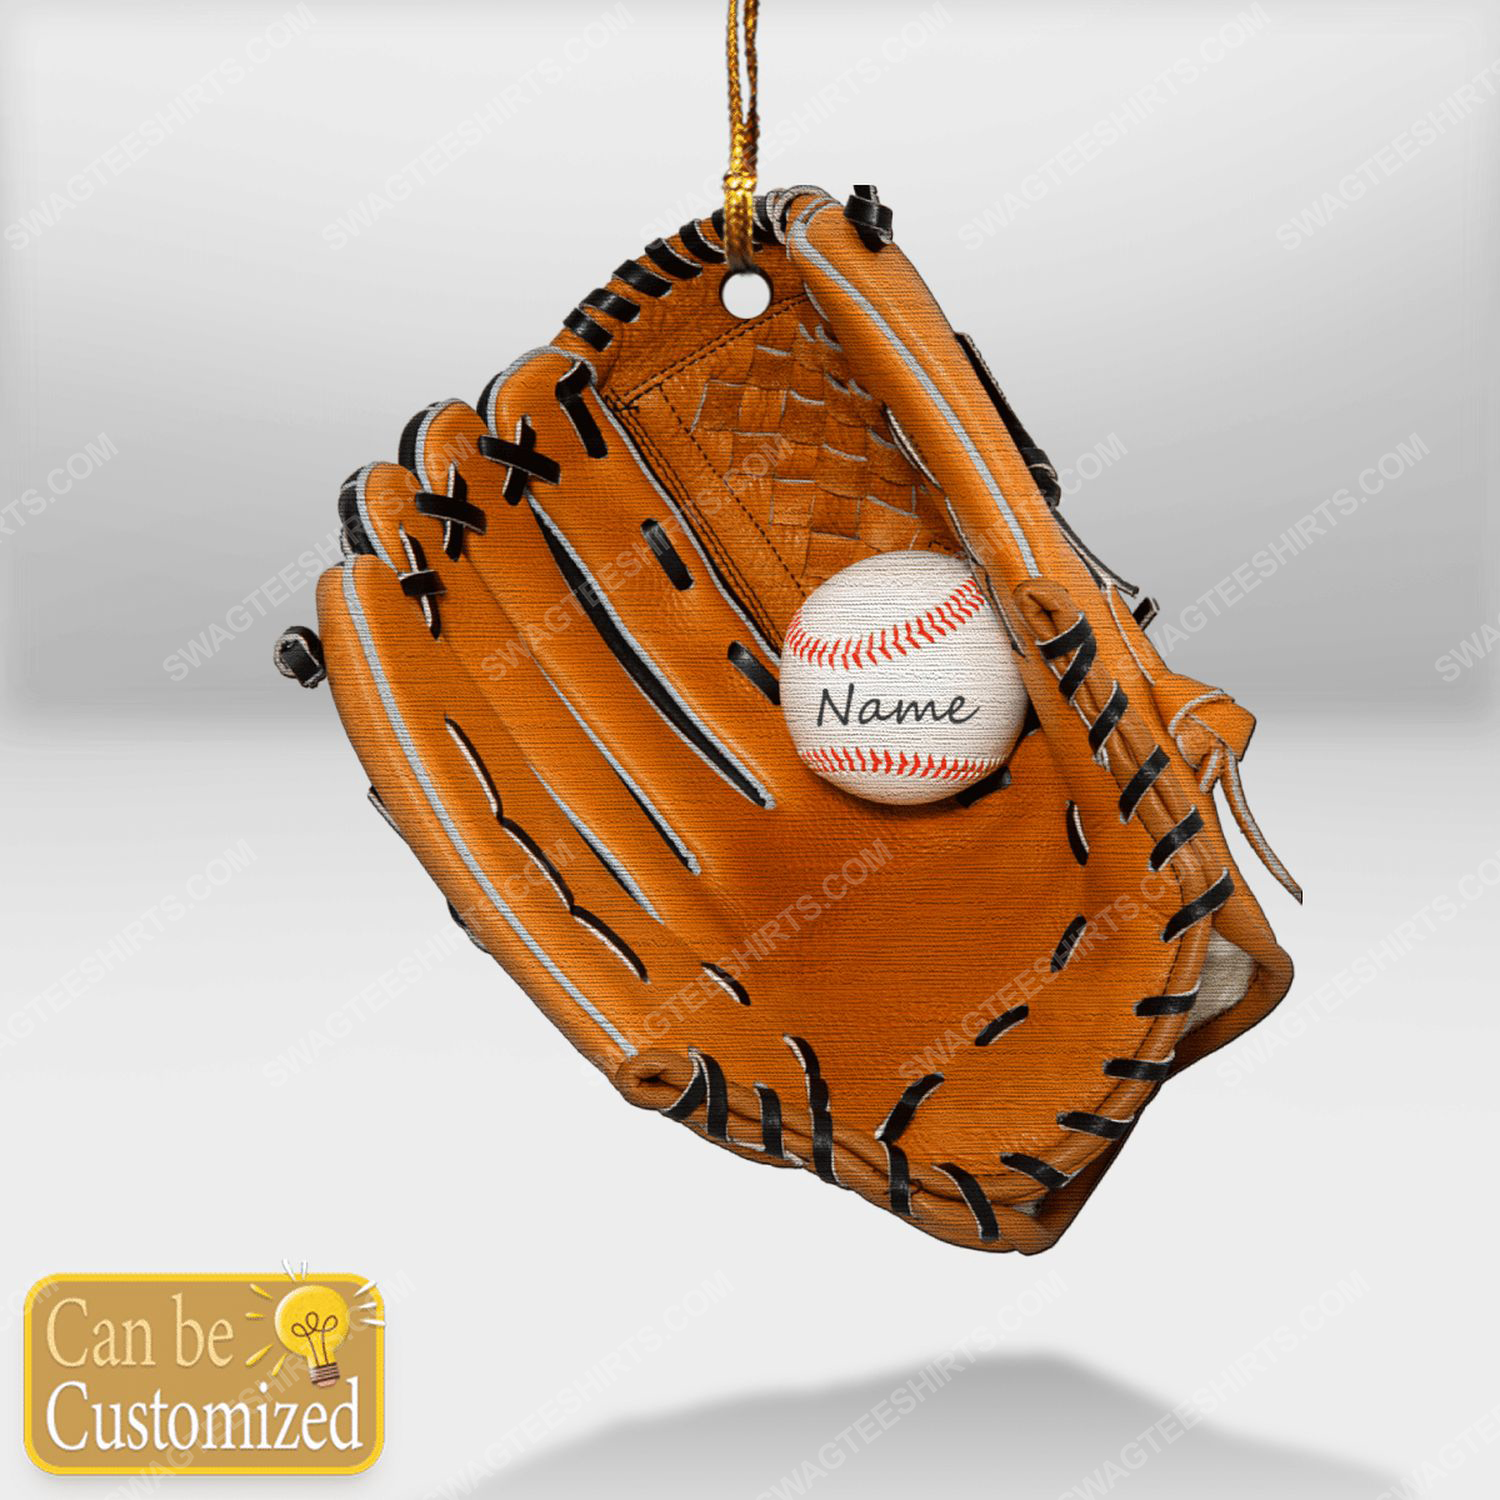 Custom baseball gloves christmas gift ornament 1 - Copy (3)